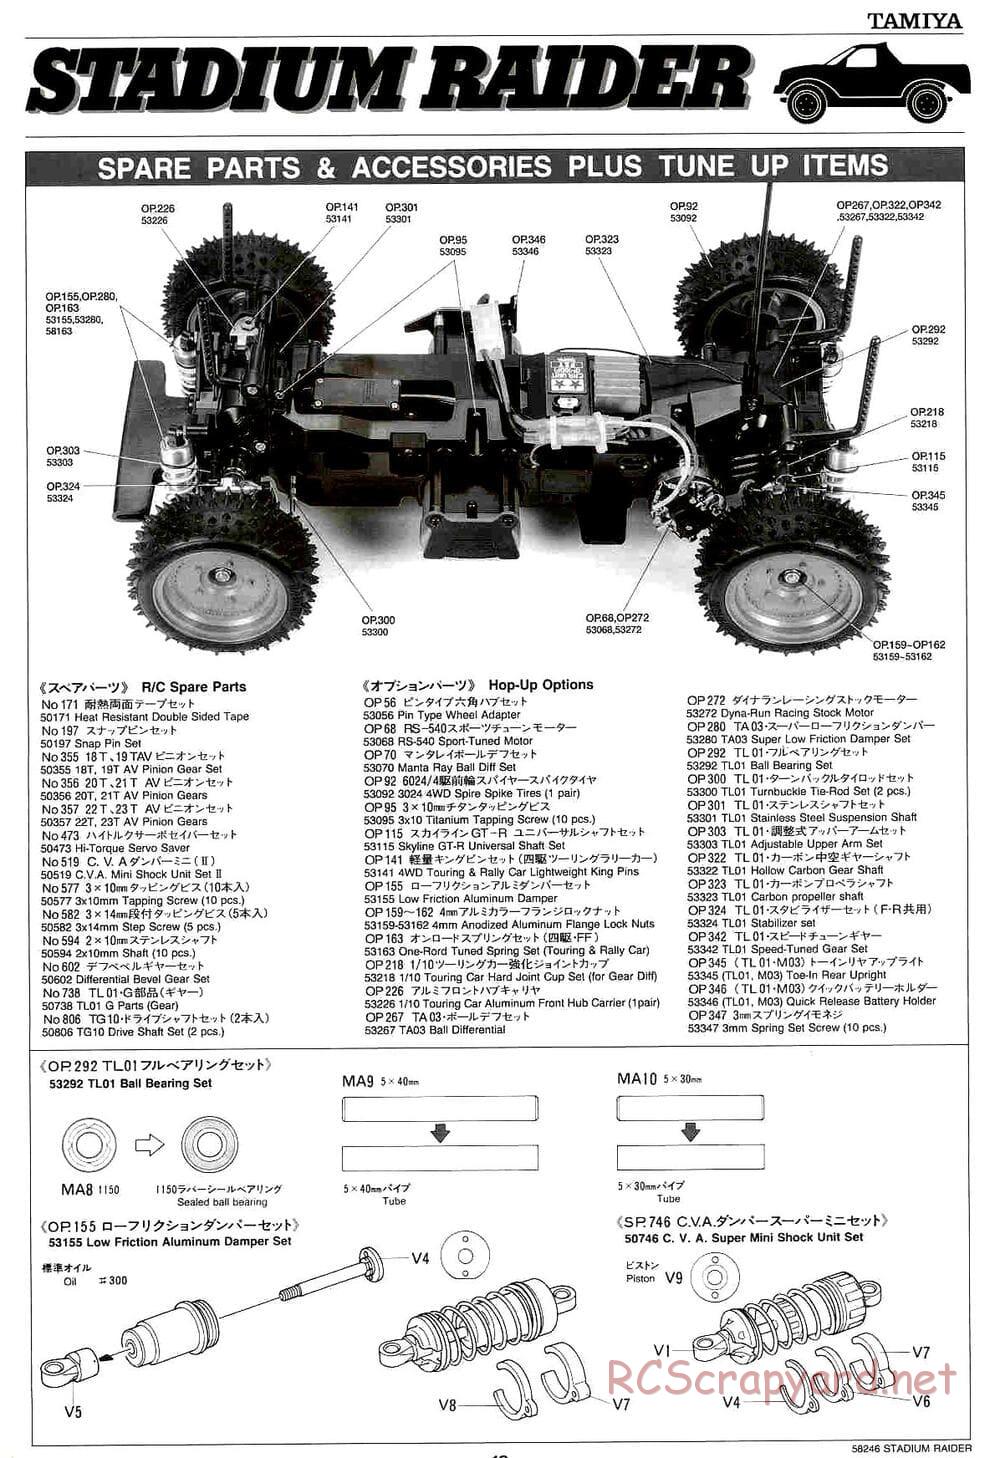 Tamiya - Stadium Raider - TL-01 Chassis - Manual - Page 19